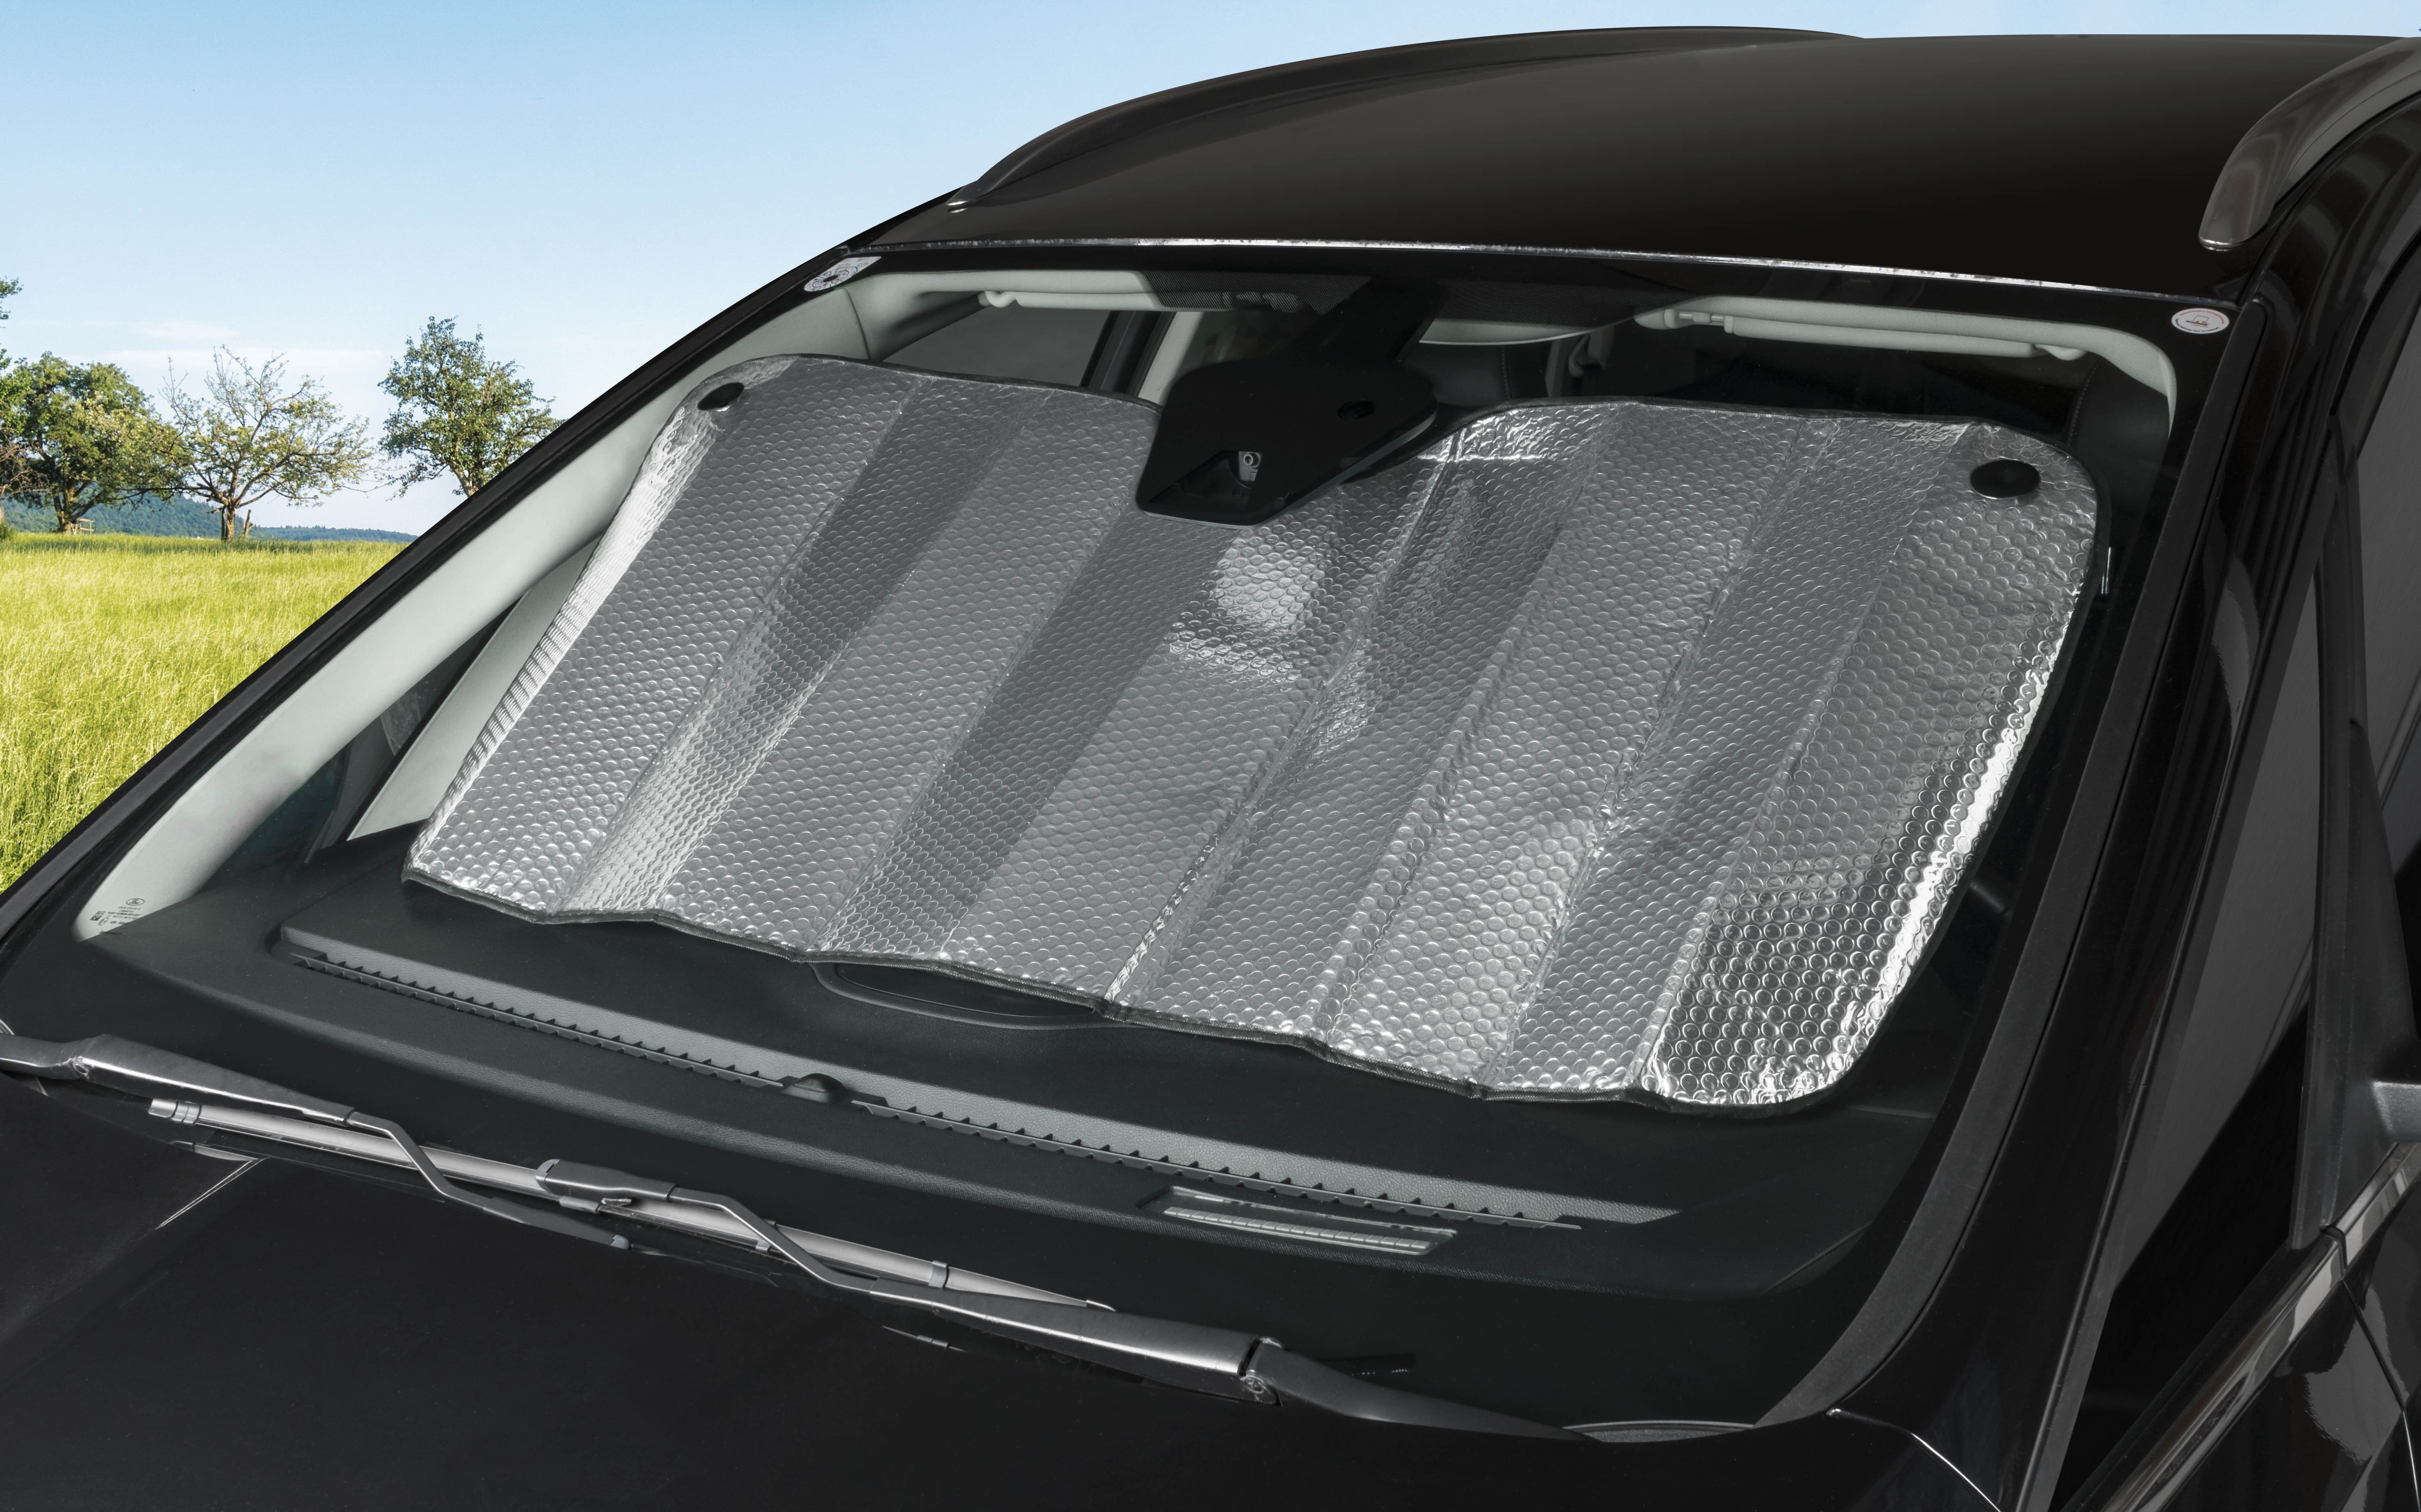 OK Cars AZ-SAA-047 Auto Sonnenschutz Frontscheibe Sonnenblende für die Windschutzscheibe Maße: 130x70cm Frontscheibenabdeckung mit Motiv Glas 